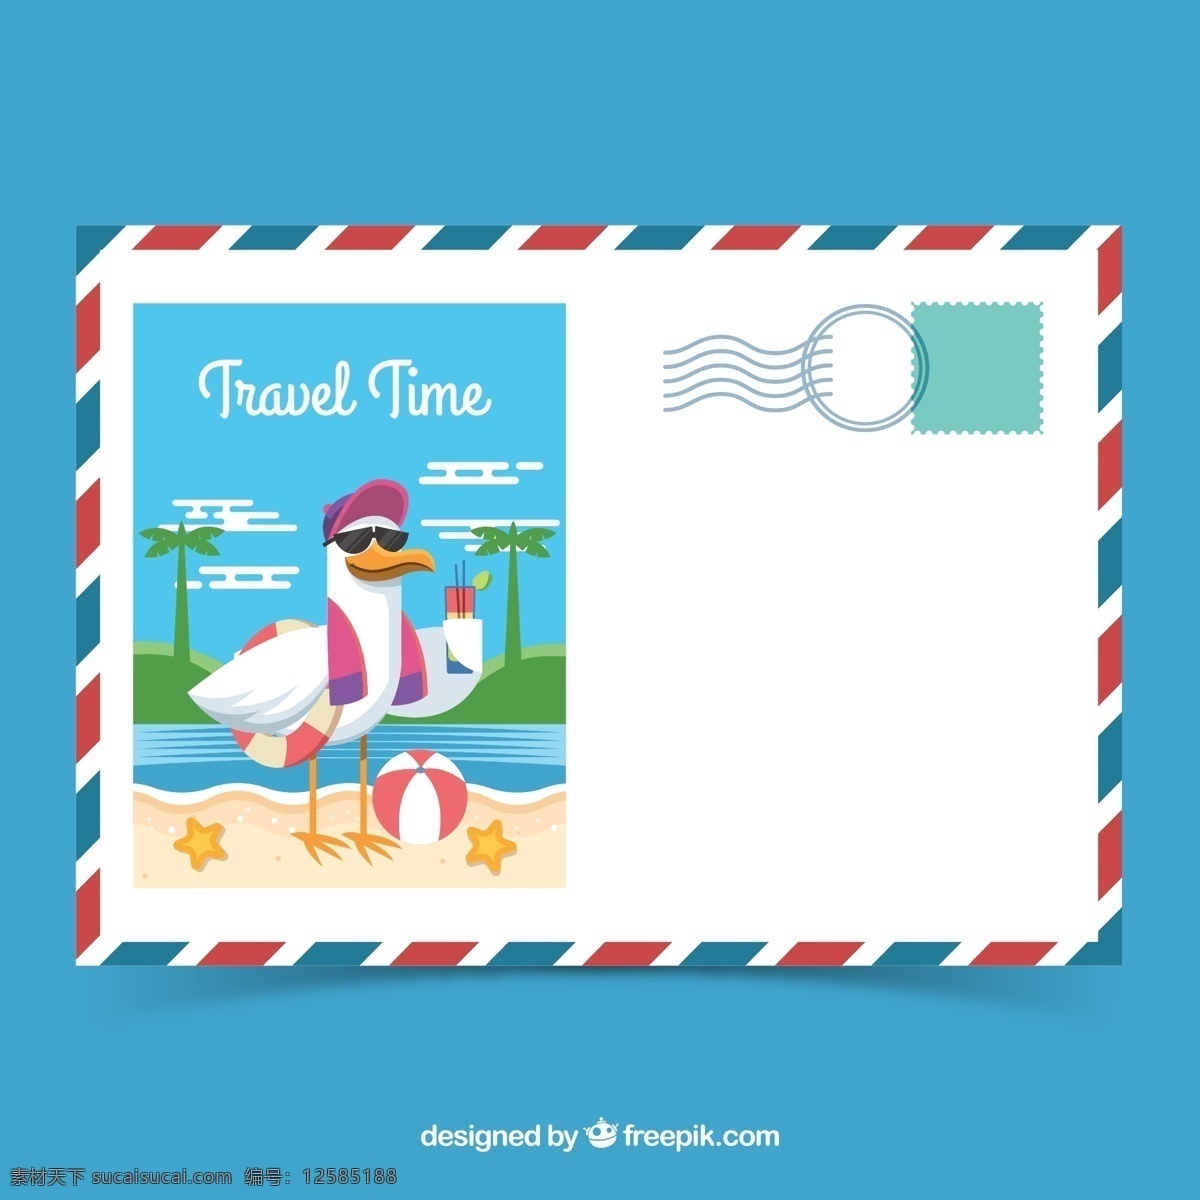 创意 度假 海鸥 明信片 鸡尾酒 旅游 椰子树 大海 饮料 岛屿 沙滩 海星 沙滩球 名片卡片